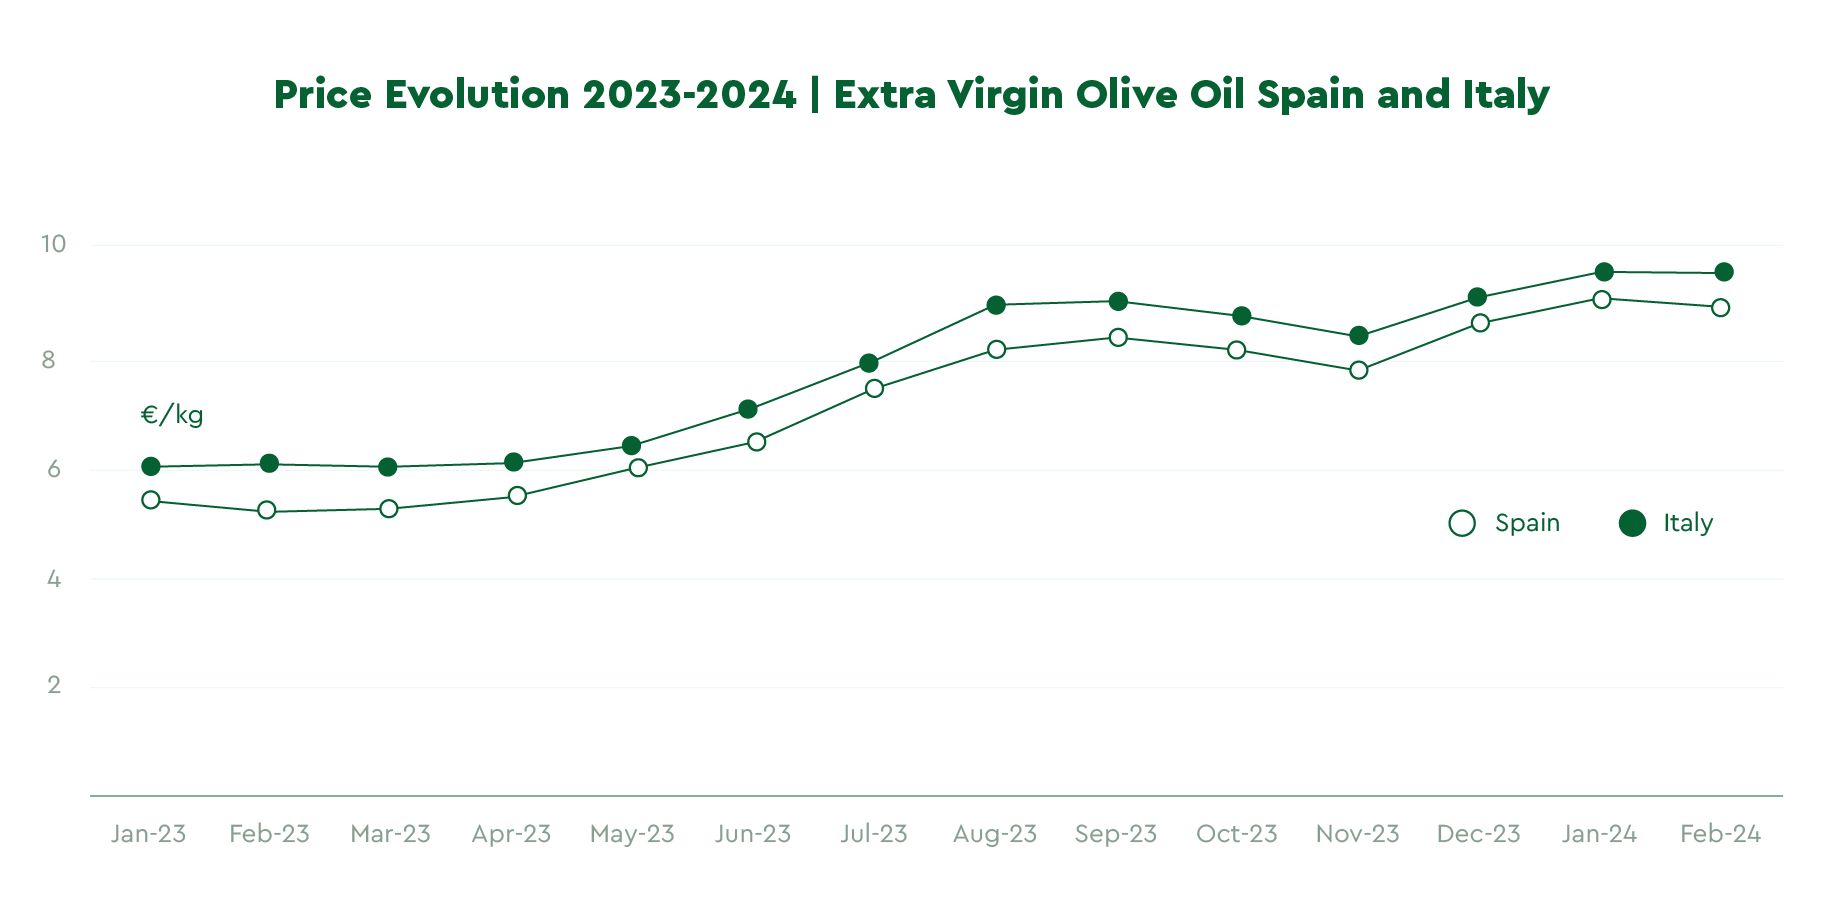 Evolution of Olive Oil Price 2023-2024